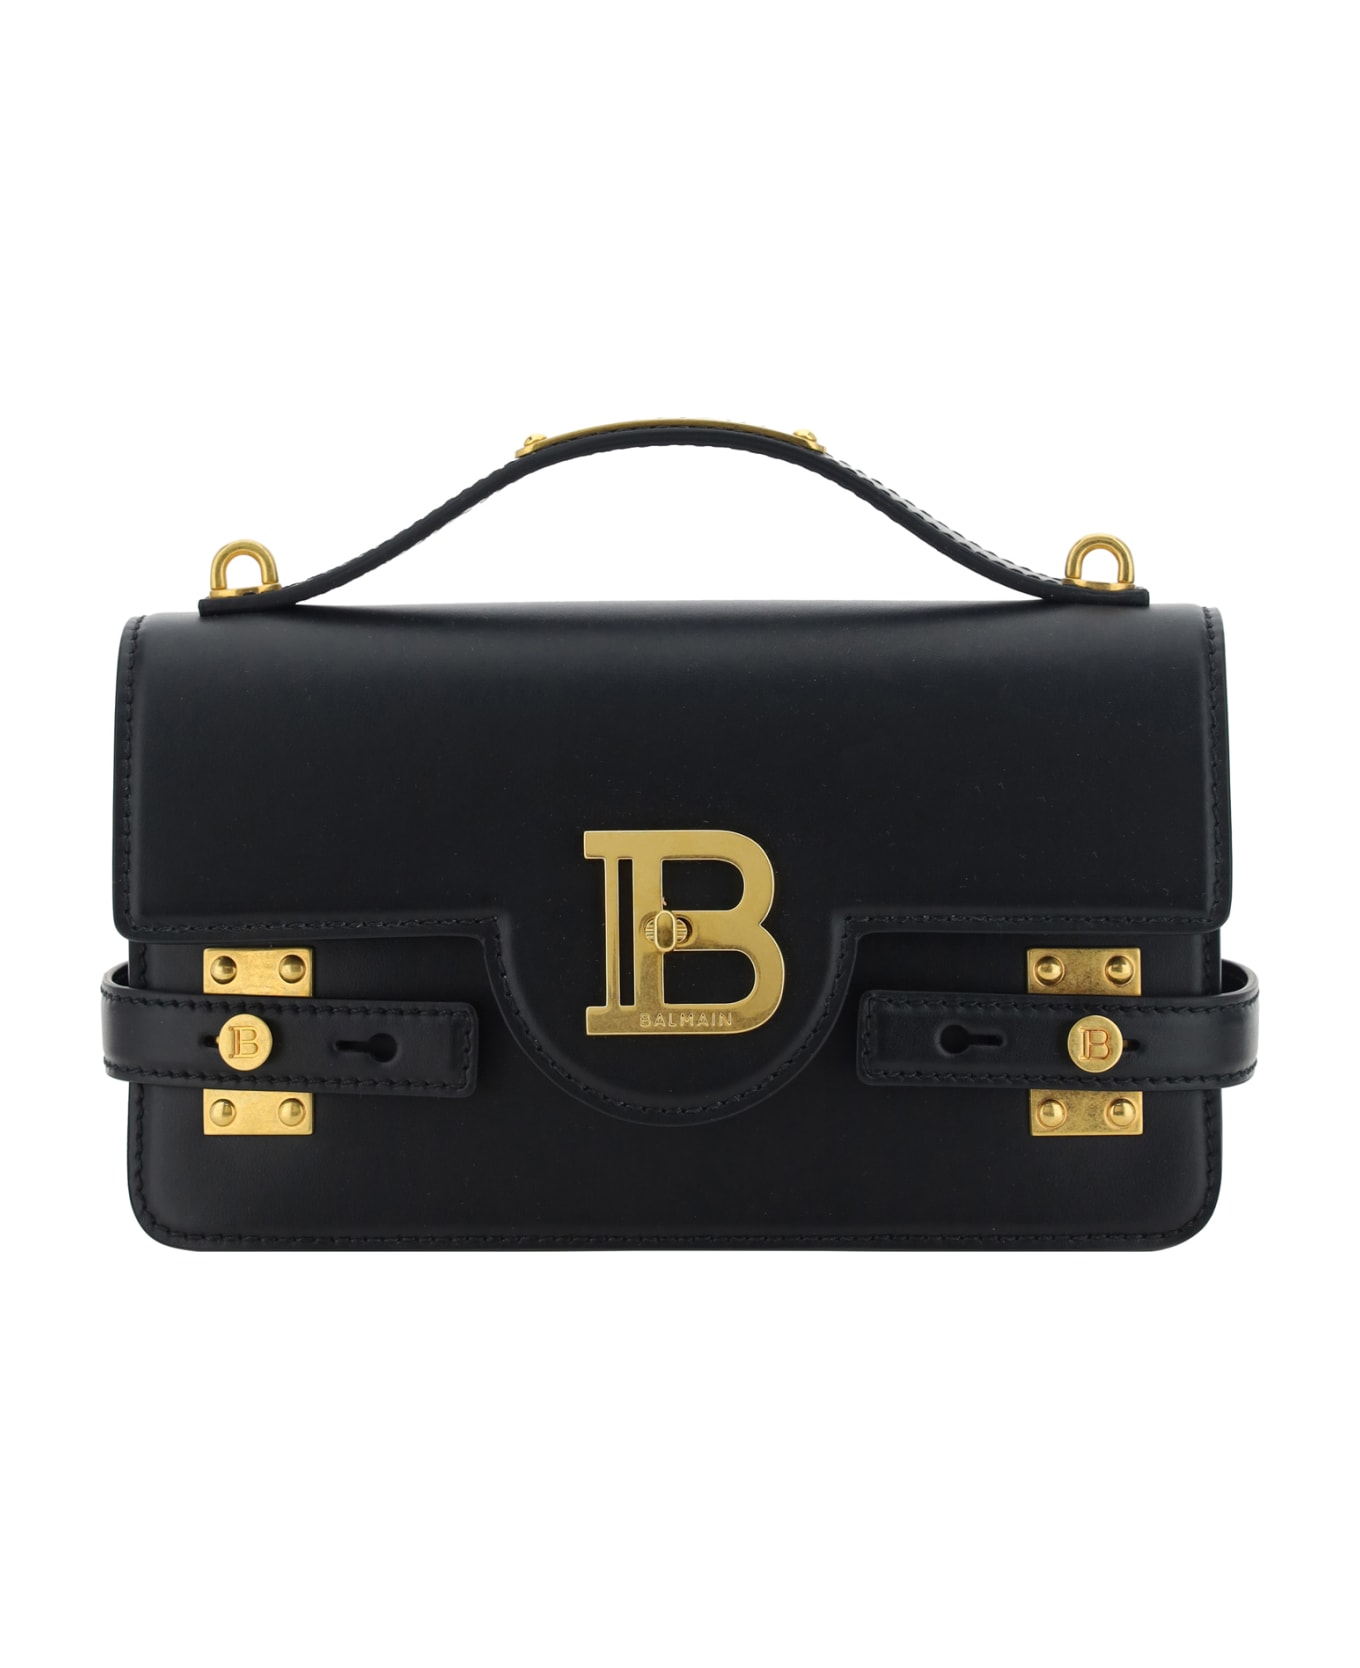 Balmain 'b-buzz 24' Handbag - Black